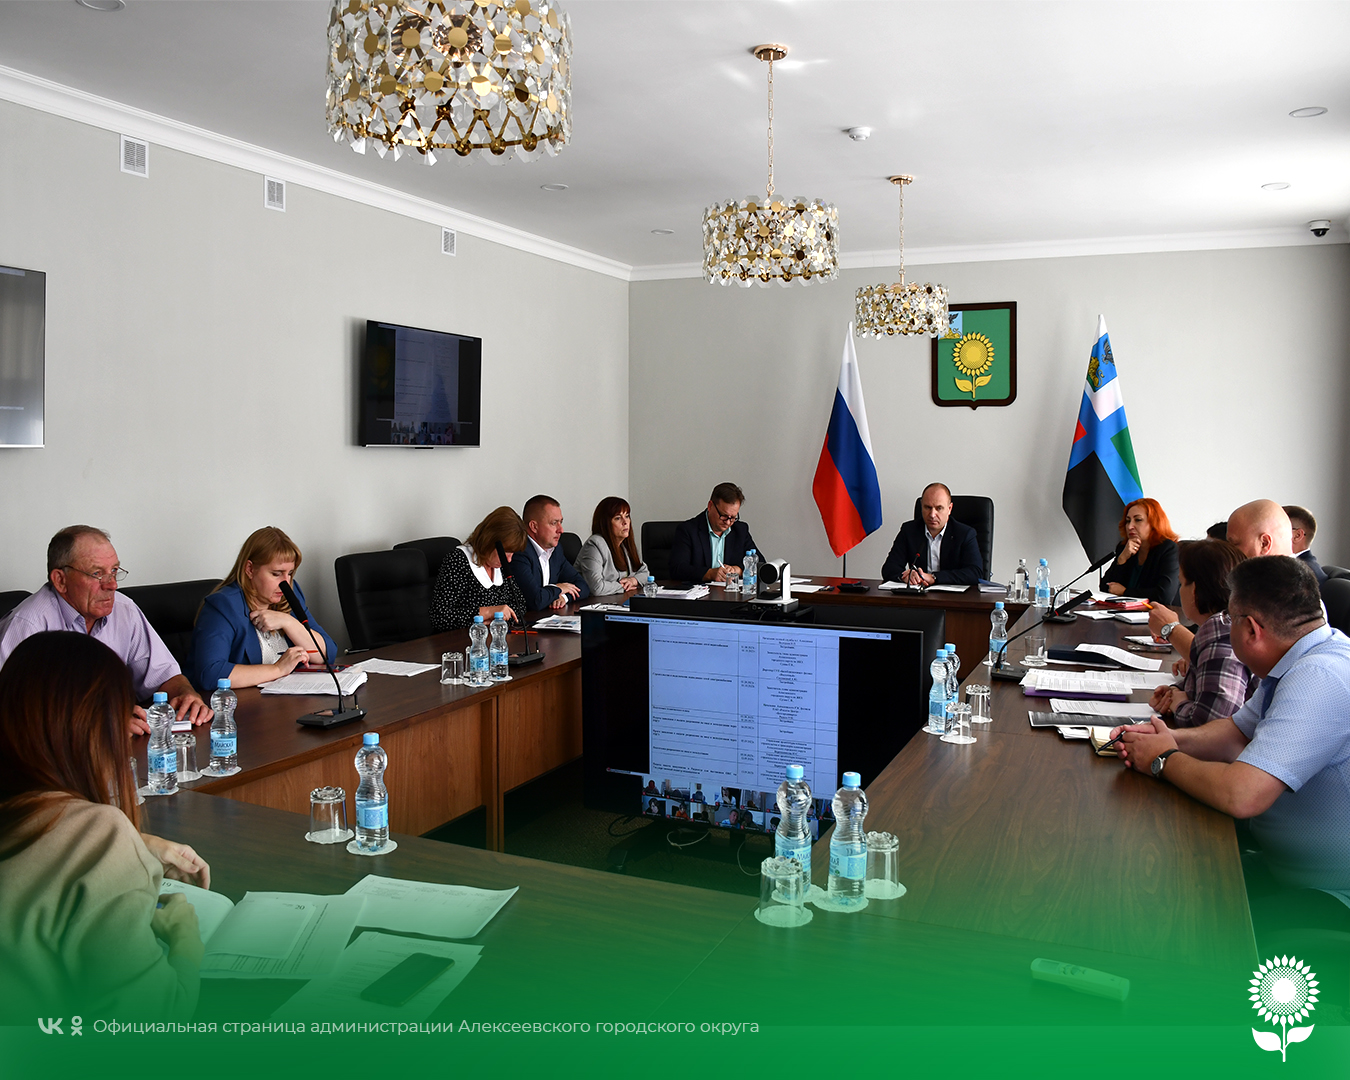 Сегодня глава администрации Алексеевского городского округа Алексей Николаевич Калашников провел еженедельное совещание по текущим вопросам.